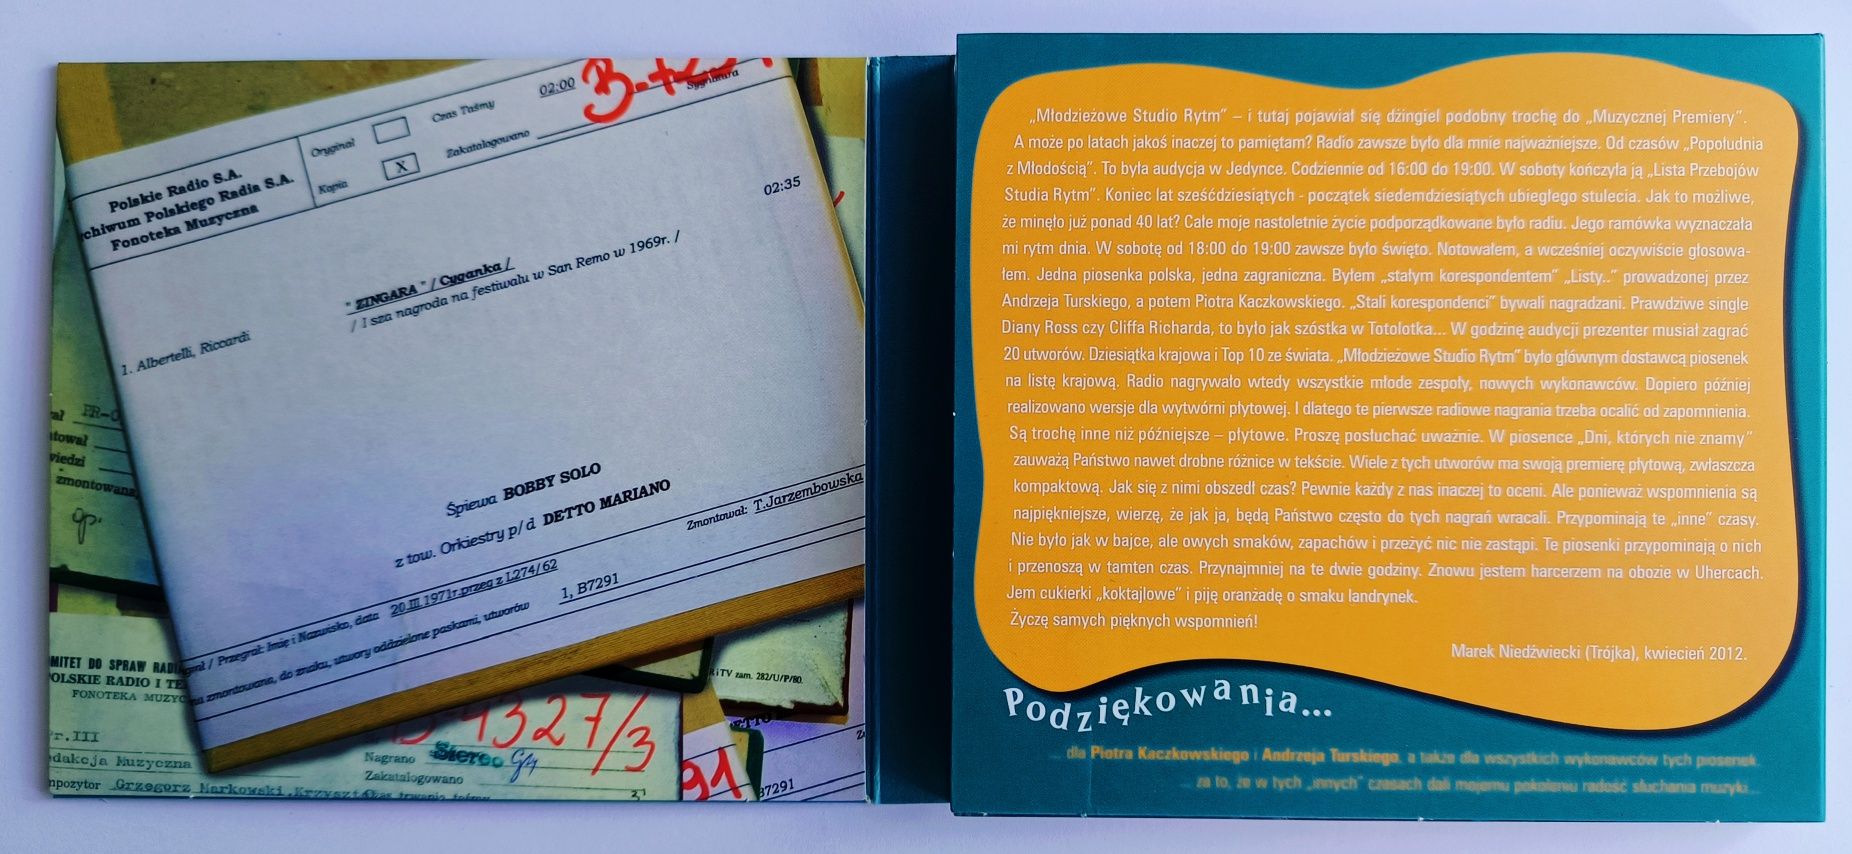 Marek Niedźwiecki poleca Z Archiwum Polskiego Big -Beatu 2CD 2012r